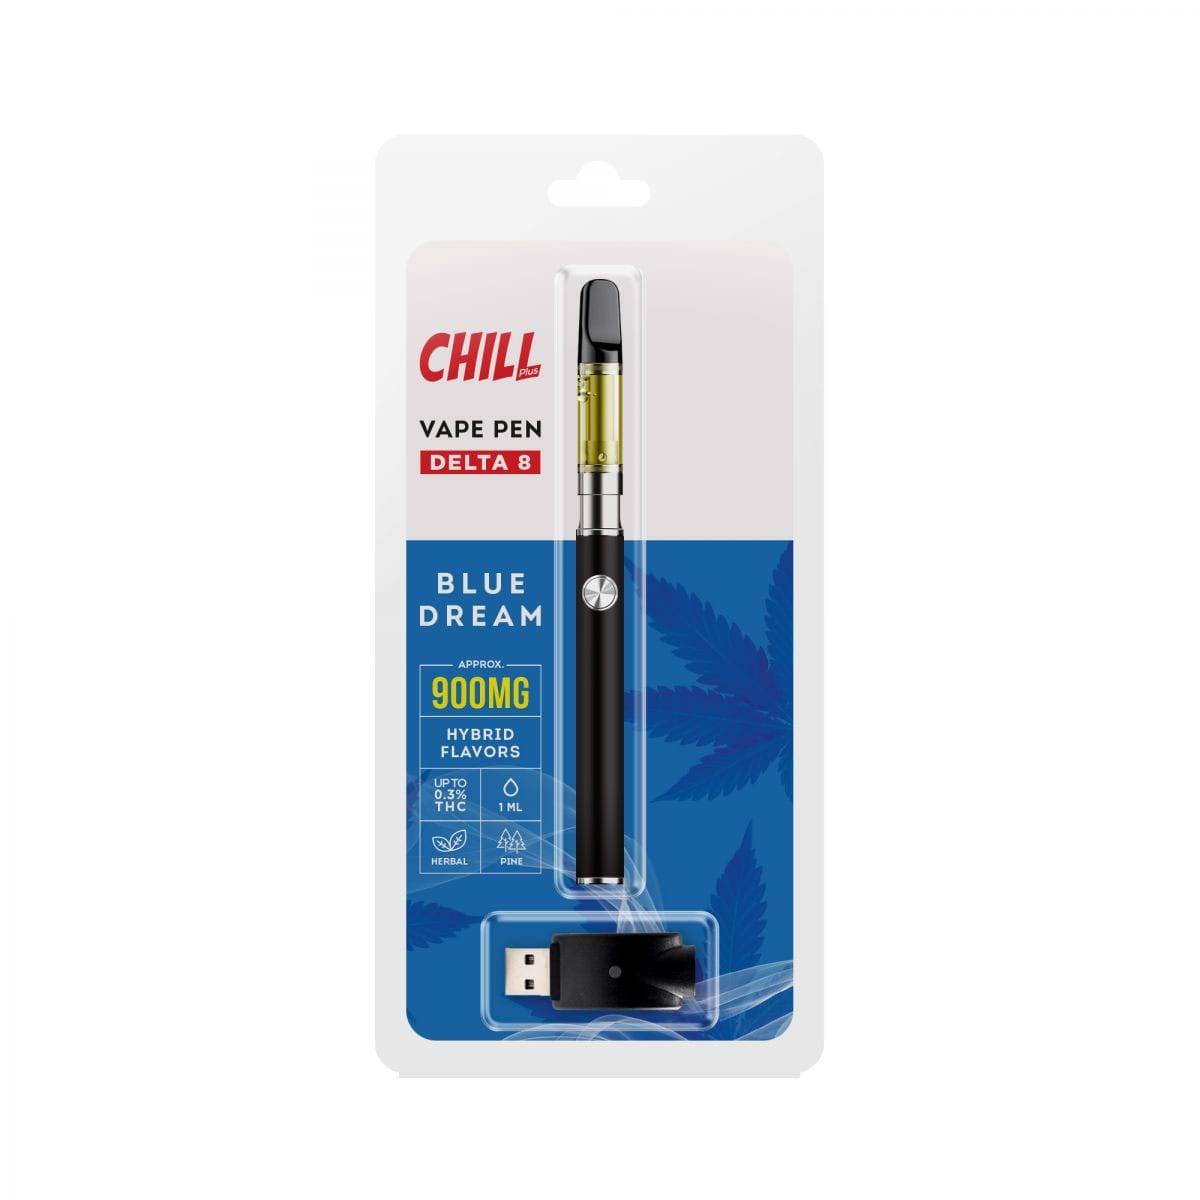 Chill Plus Delta 8 Disposable Vape Pen - Blue Dream 900mg - Direct Delta 8 Shop